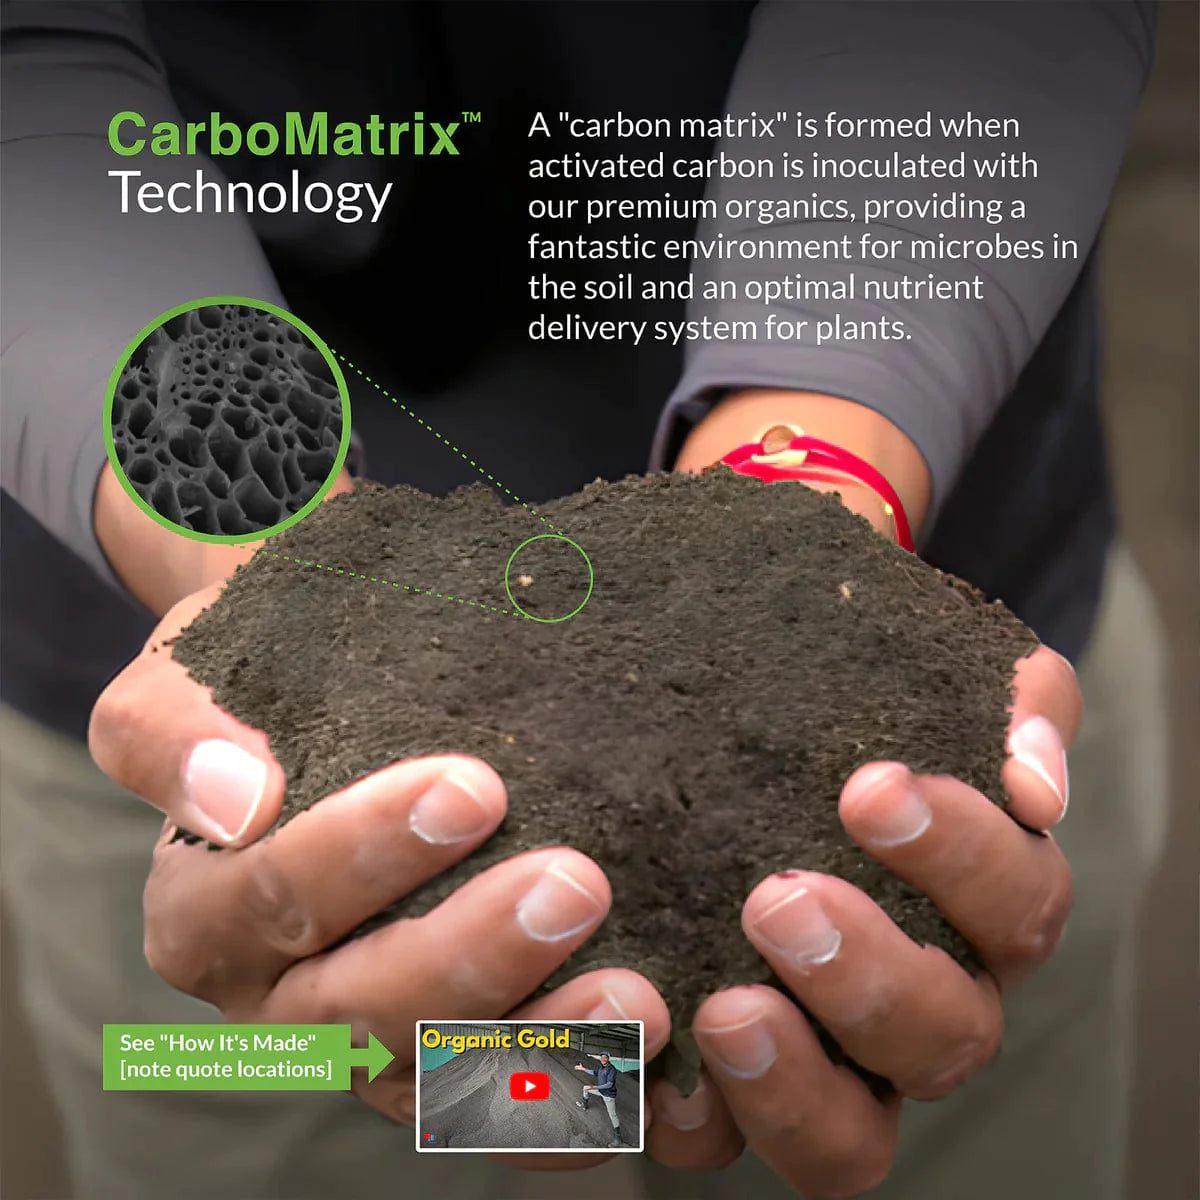 CarbonizPN® Soil Enhancer 40lbs.